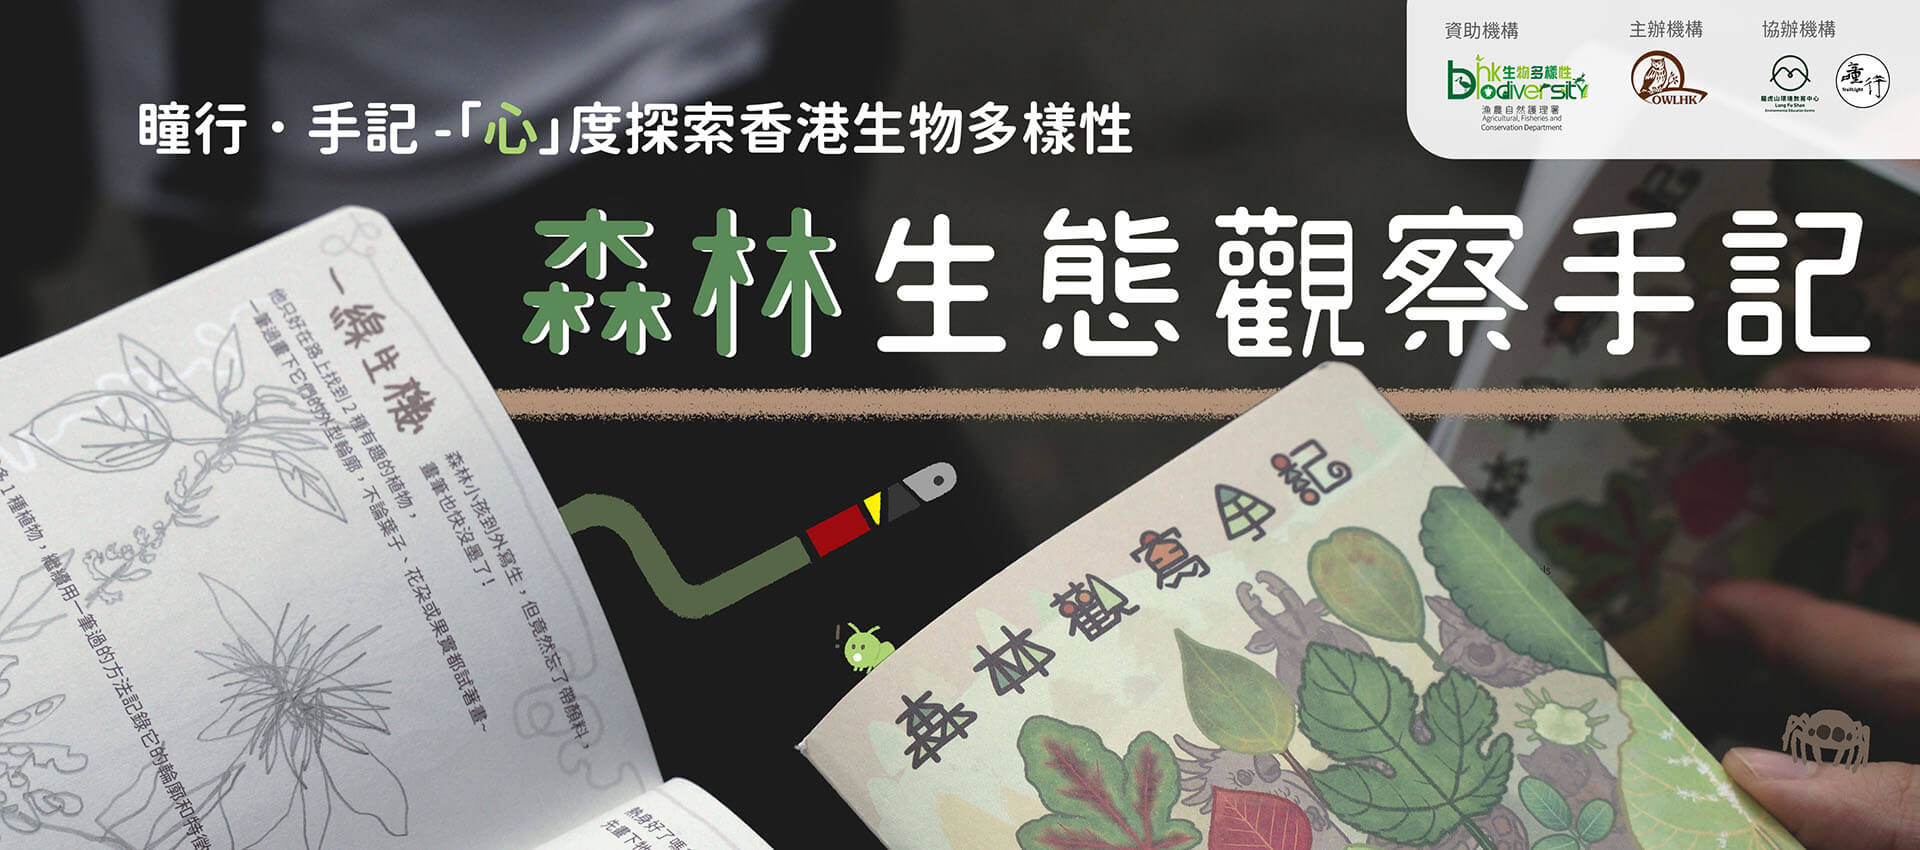 瞳行．手記 -「心」度探索香港生物多樣性 - 森林生態觀察手記